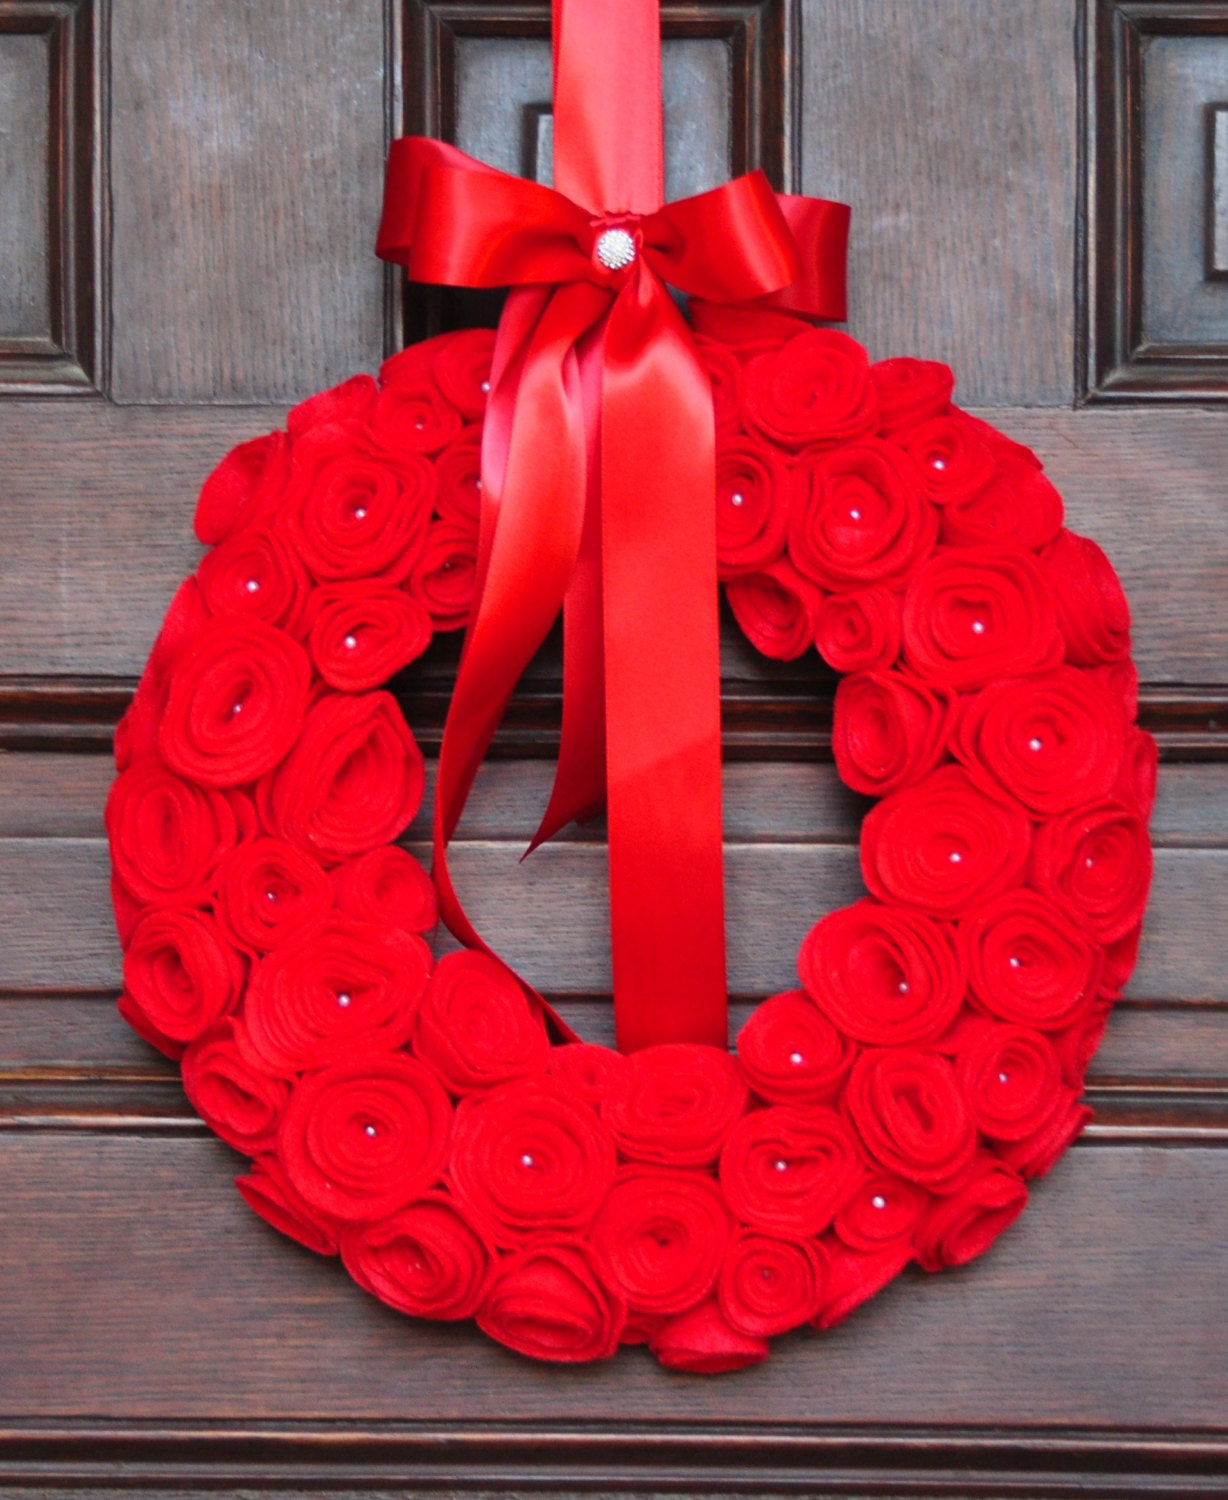 Christmas Wreath, Valentine's Wreath, Christmas Decor, Red Rose Wreath, Valentine Wreath, Felt Wreath, Holiday Wreath, Christmas Wreath,